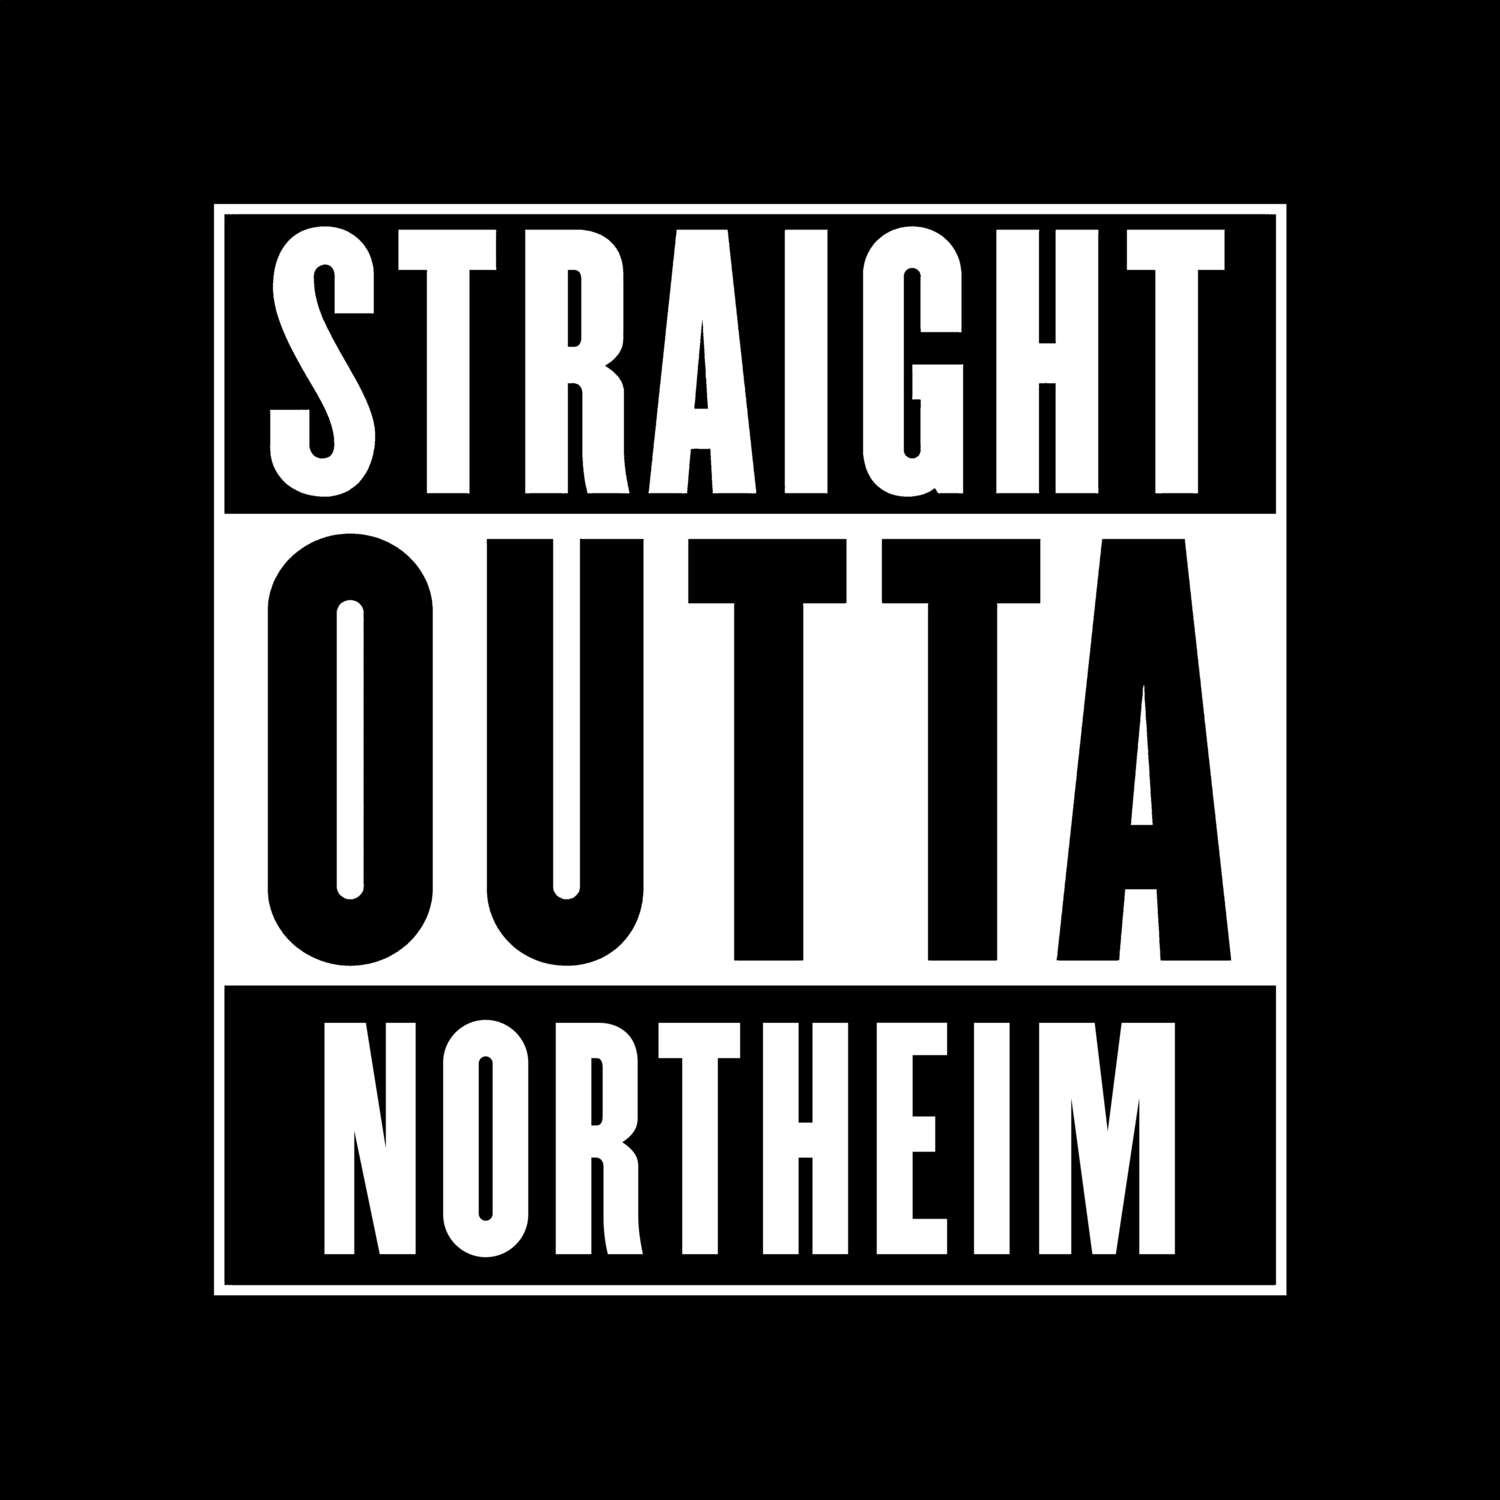 Northeim T-Shirt »Straight Outta«